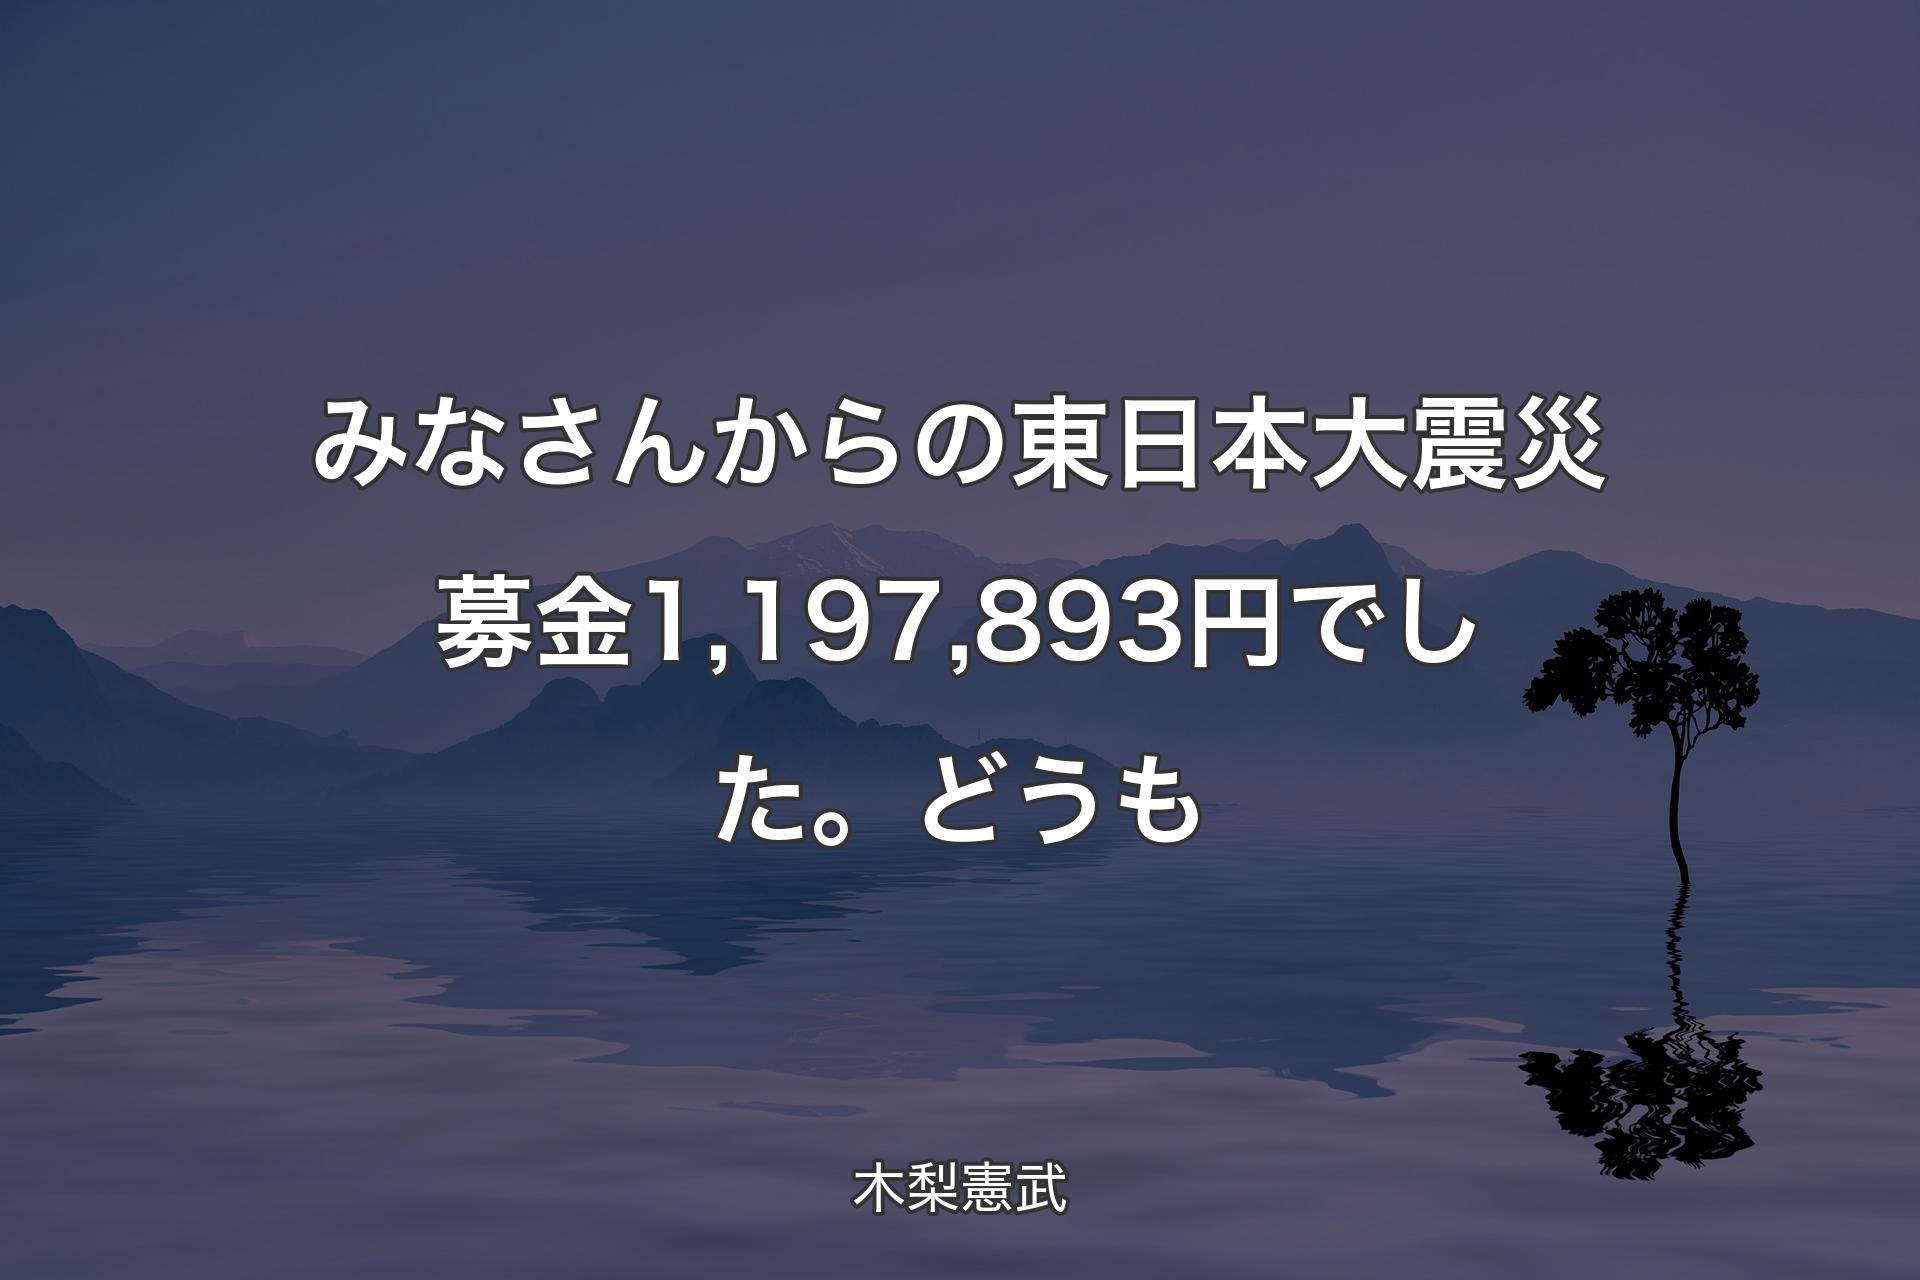 【背景4】みなさんからの東日本大震災募金1,197,893円でし�た。どうも - 木梨憲武